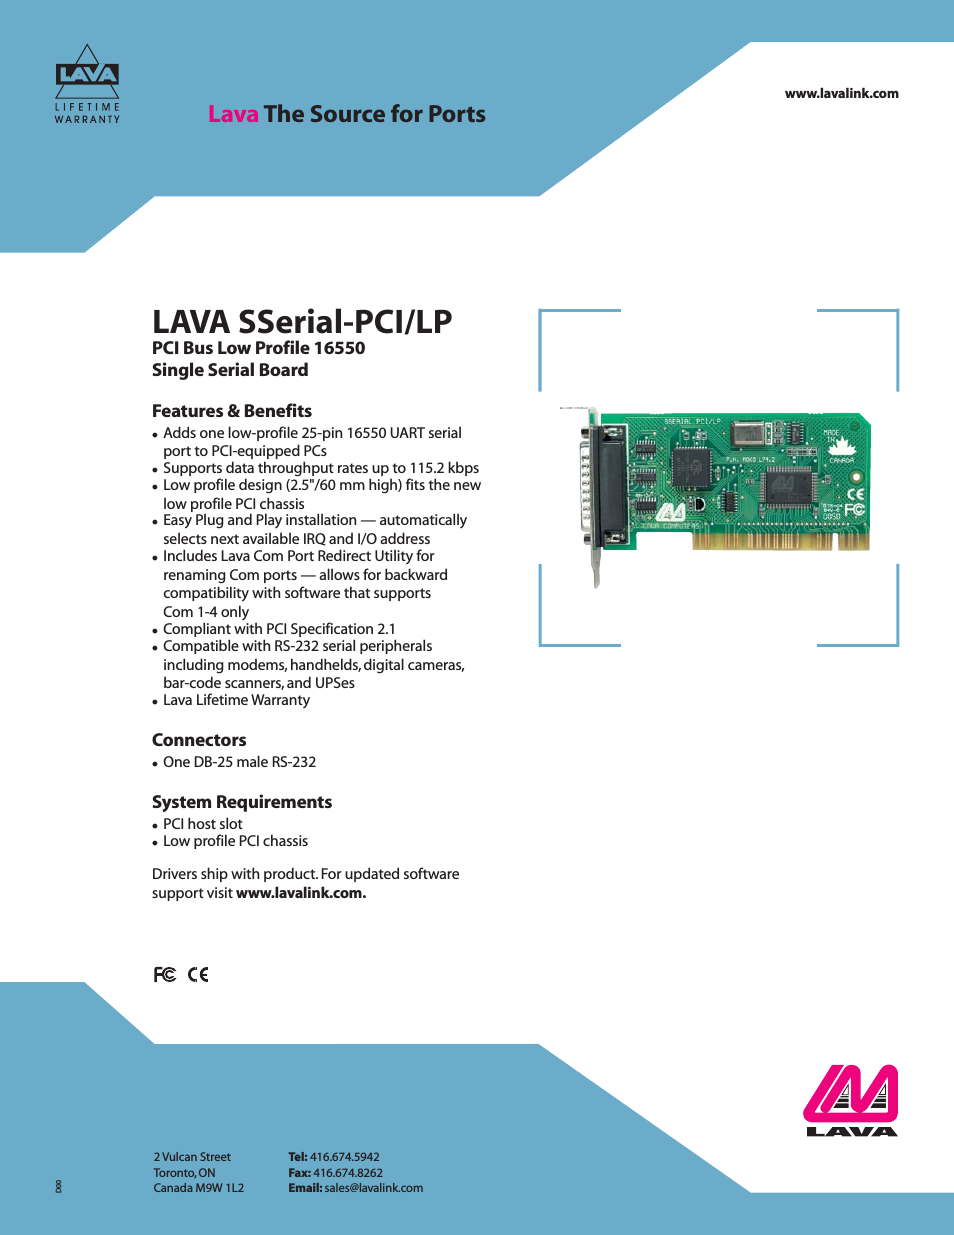 LAVA SSerial-PCI/LP (Page 1)